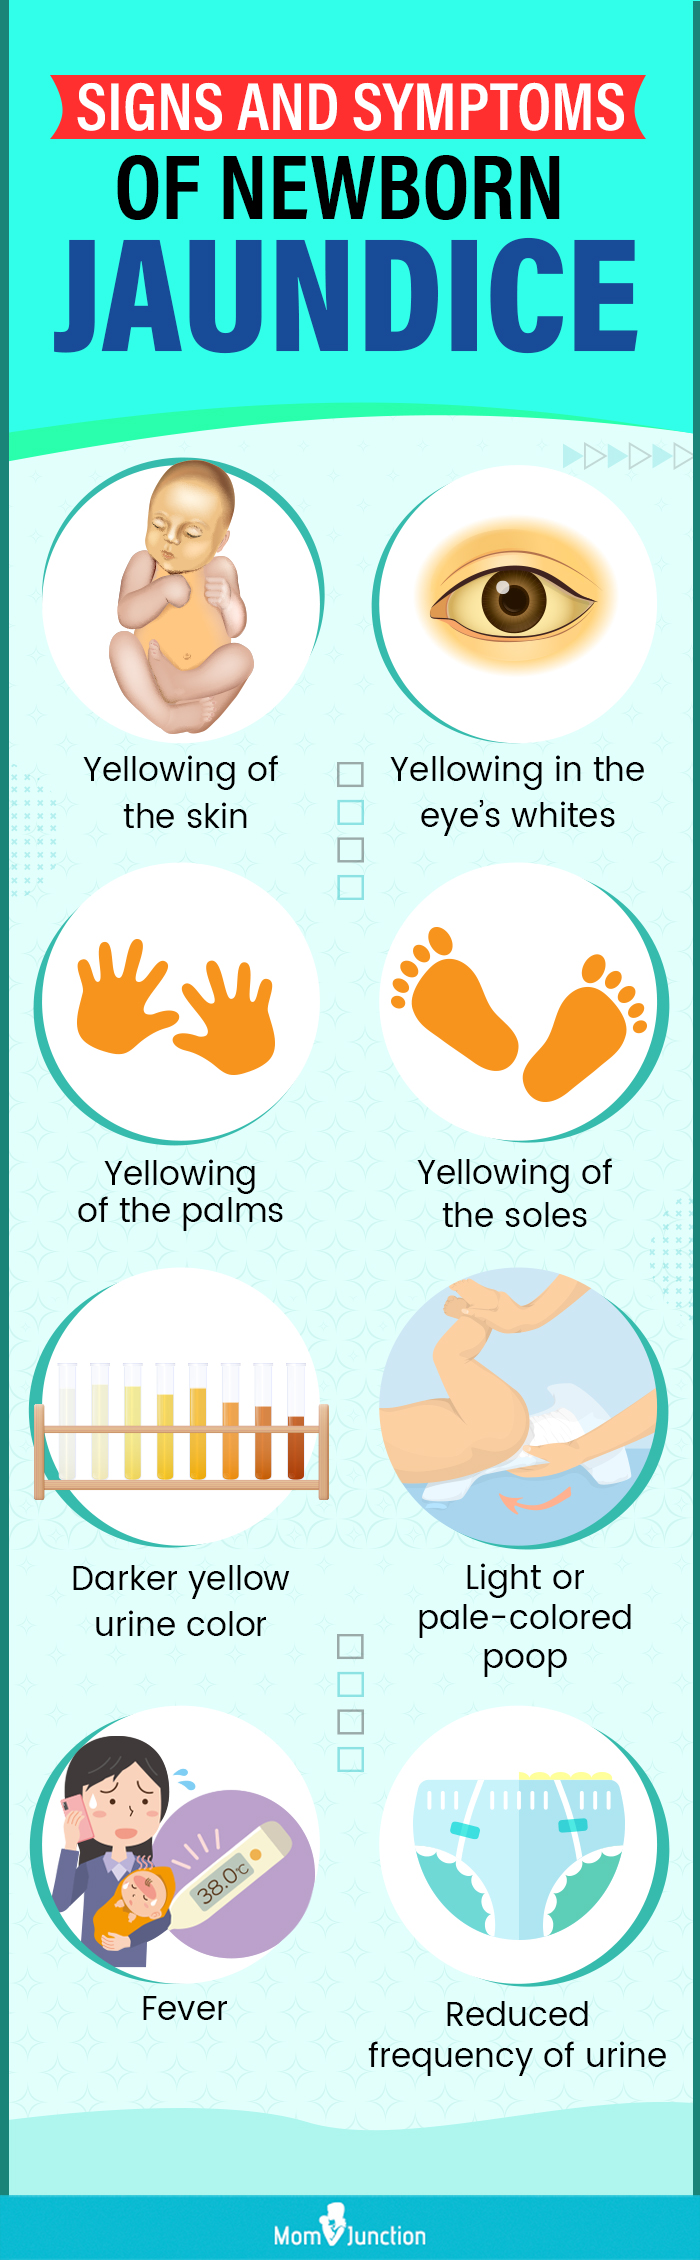 新生儿黄疸的体征和症状(信息图)